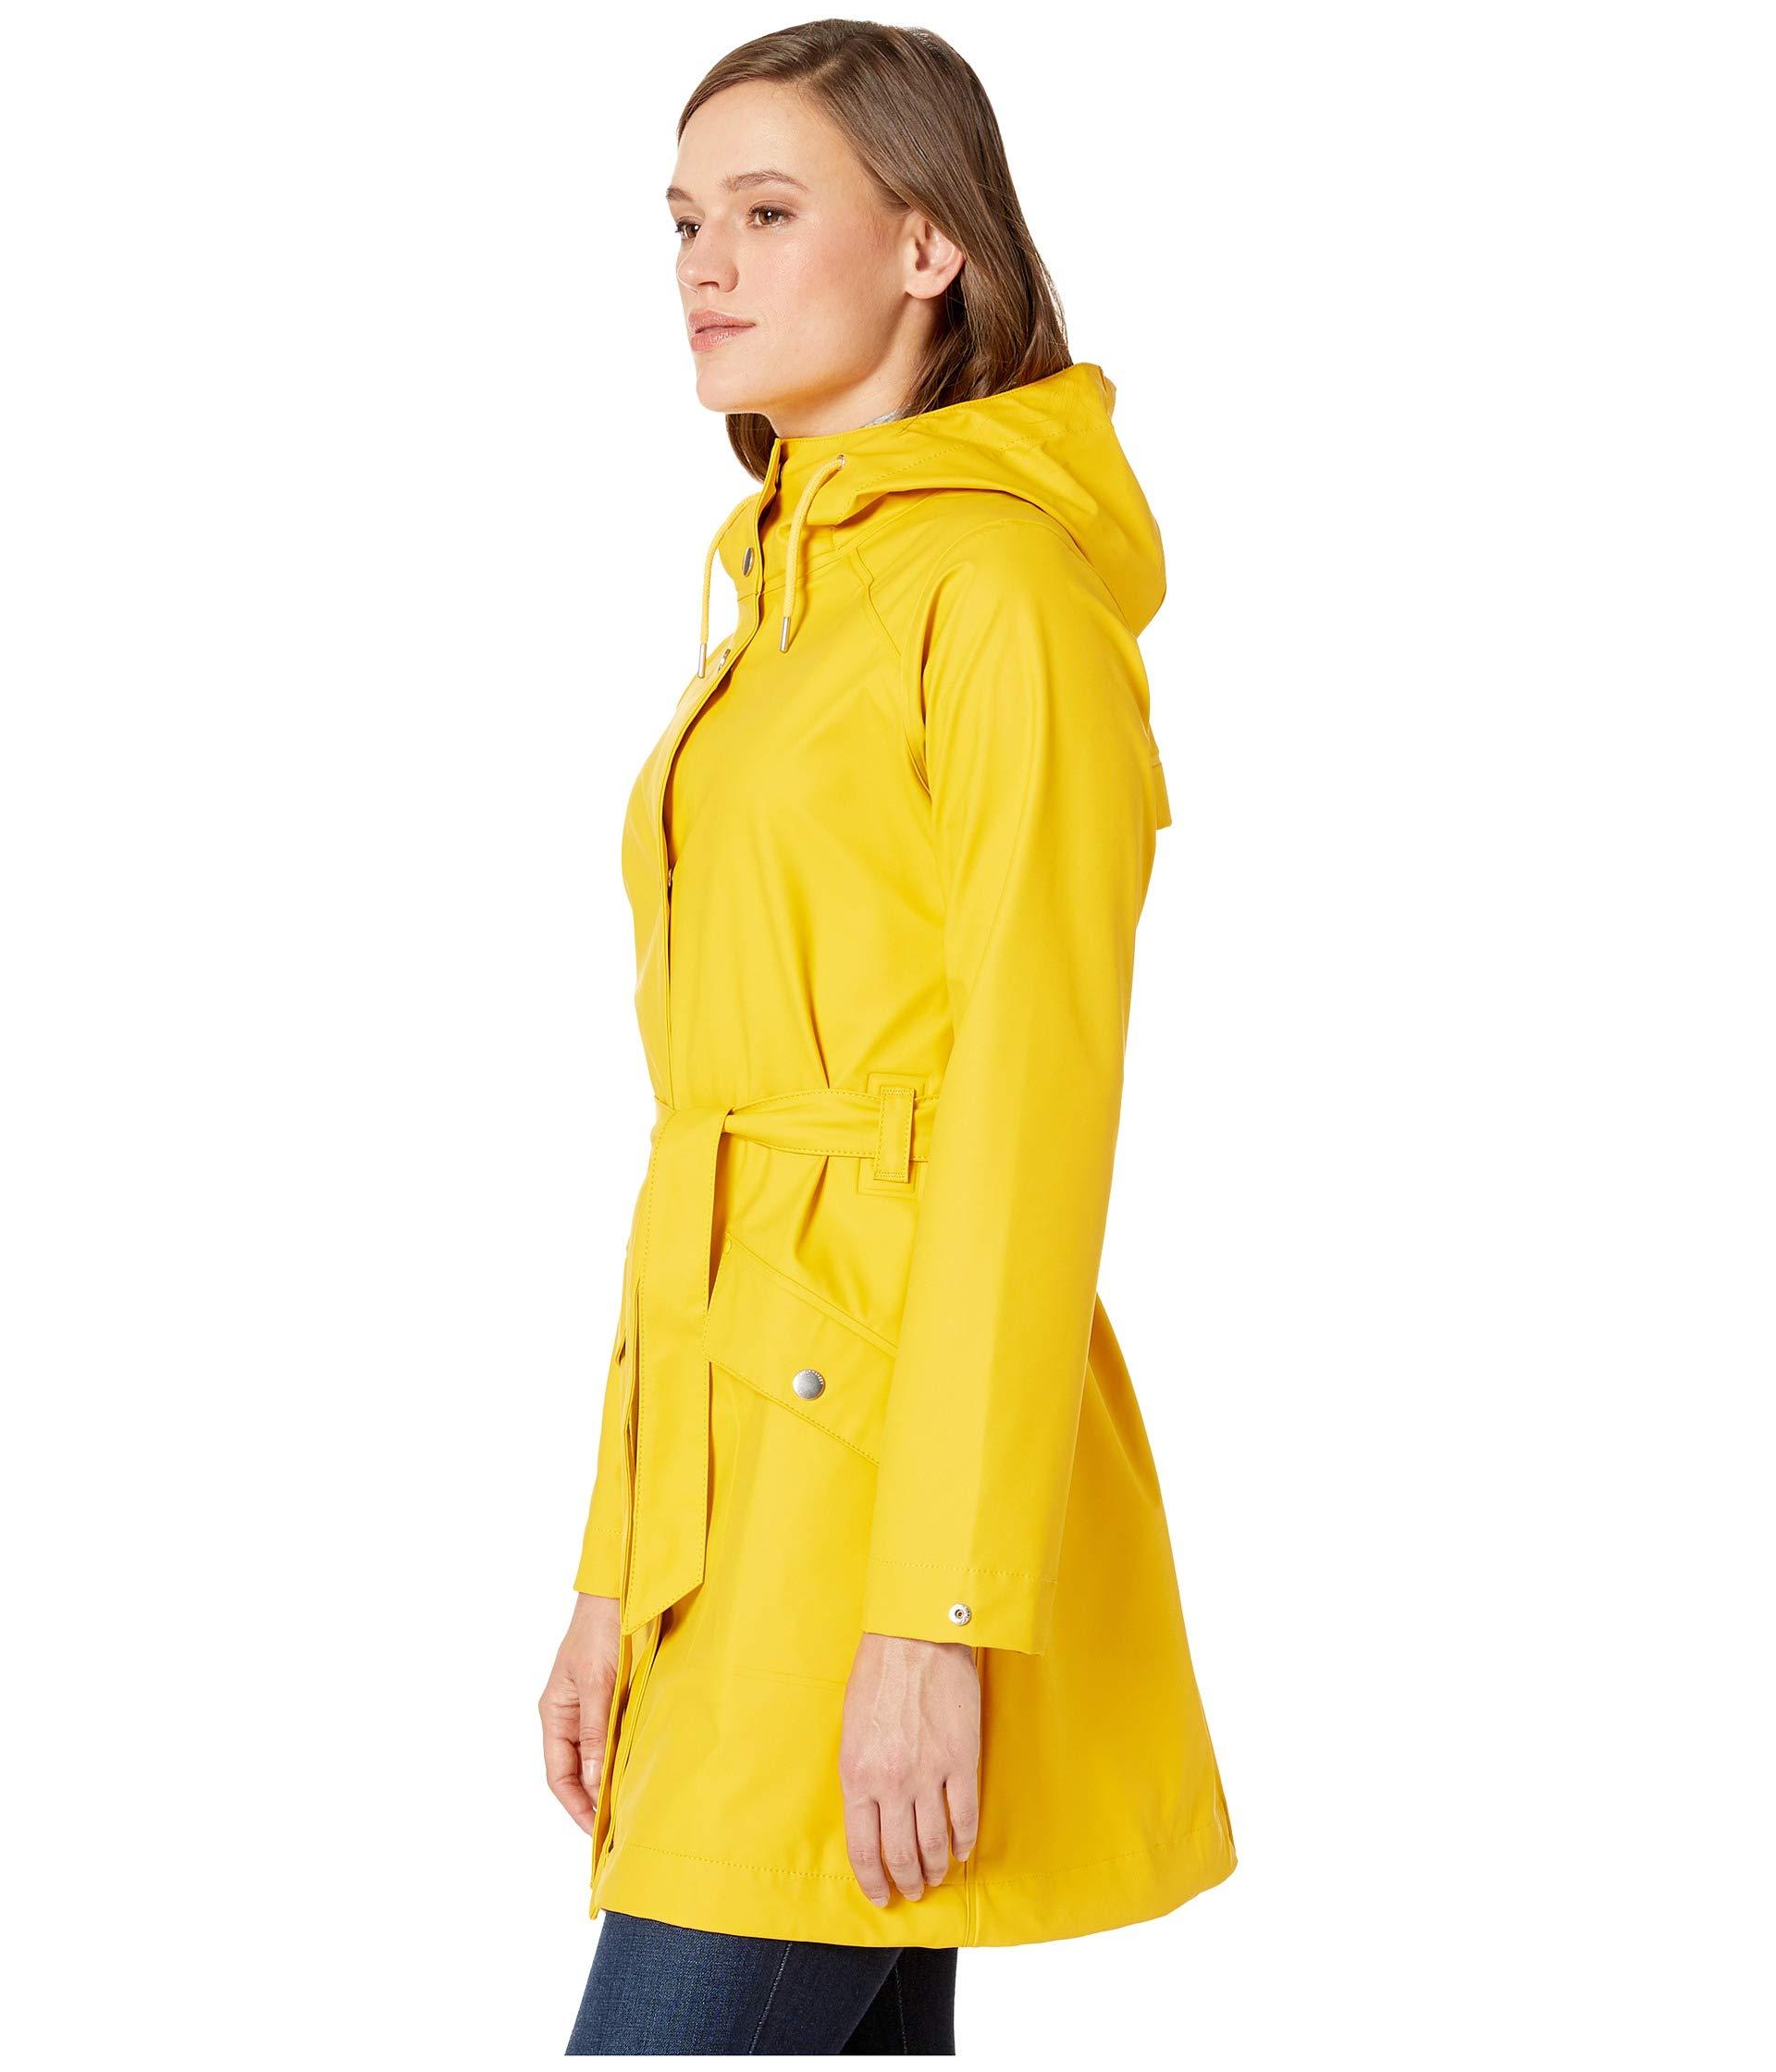 Lyst - Helly Hansen Kirkwall Ii Raincoat (navy) Women's Coat in Yellow